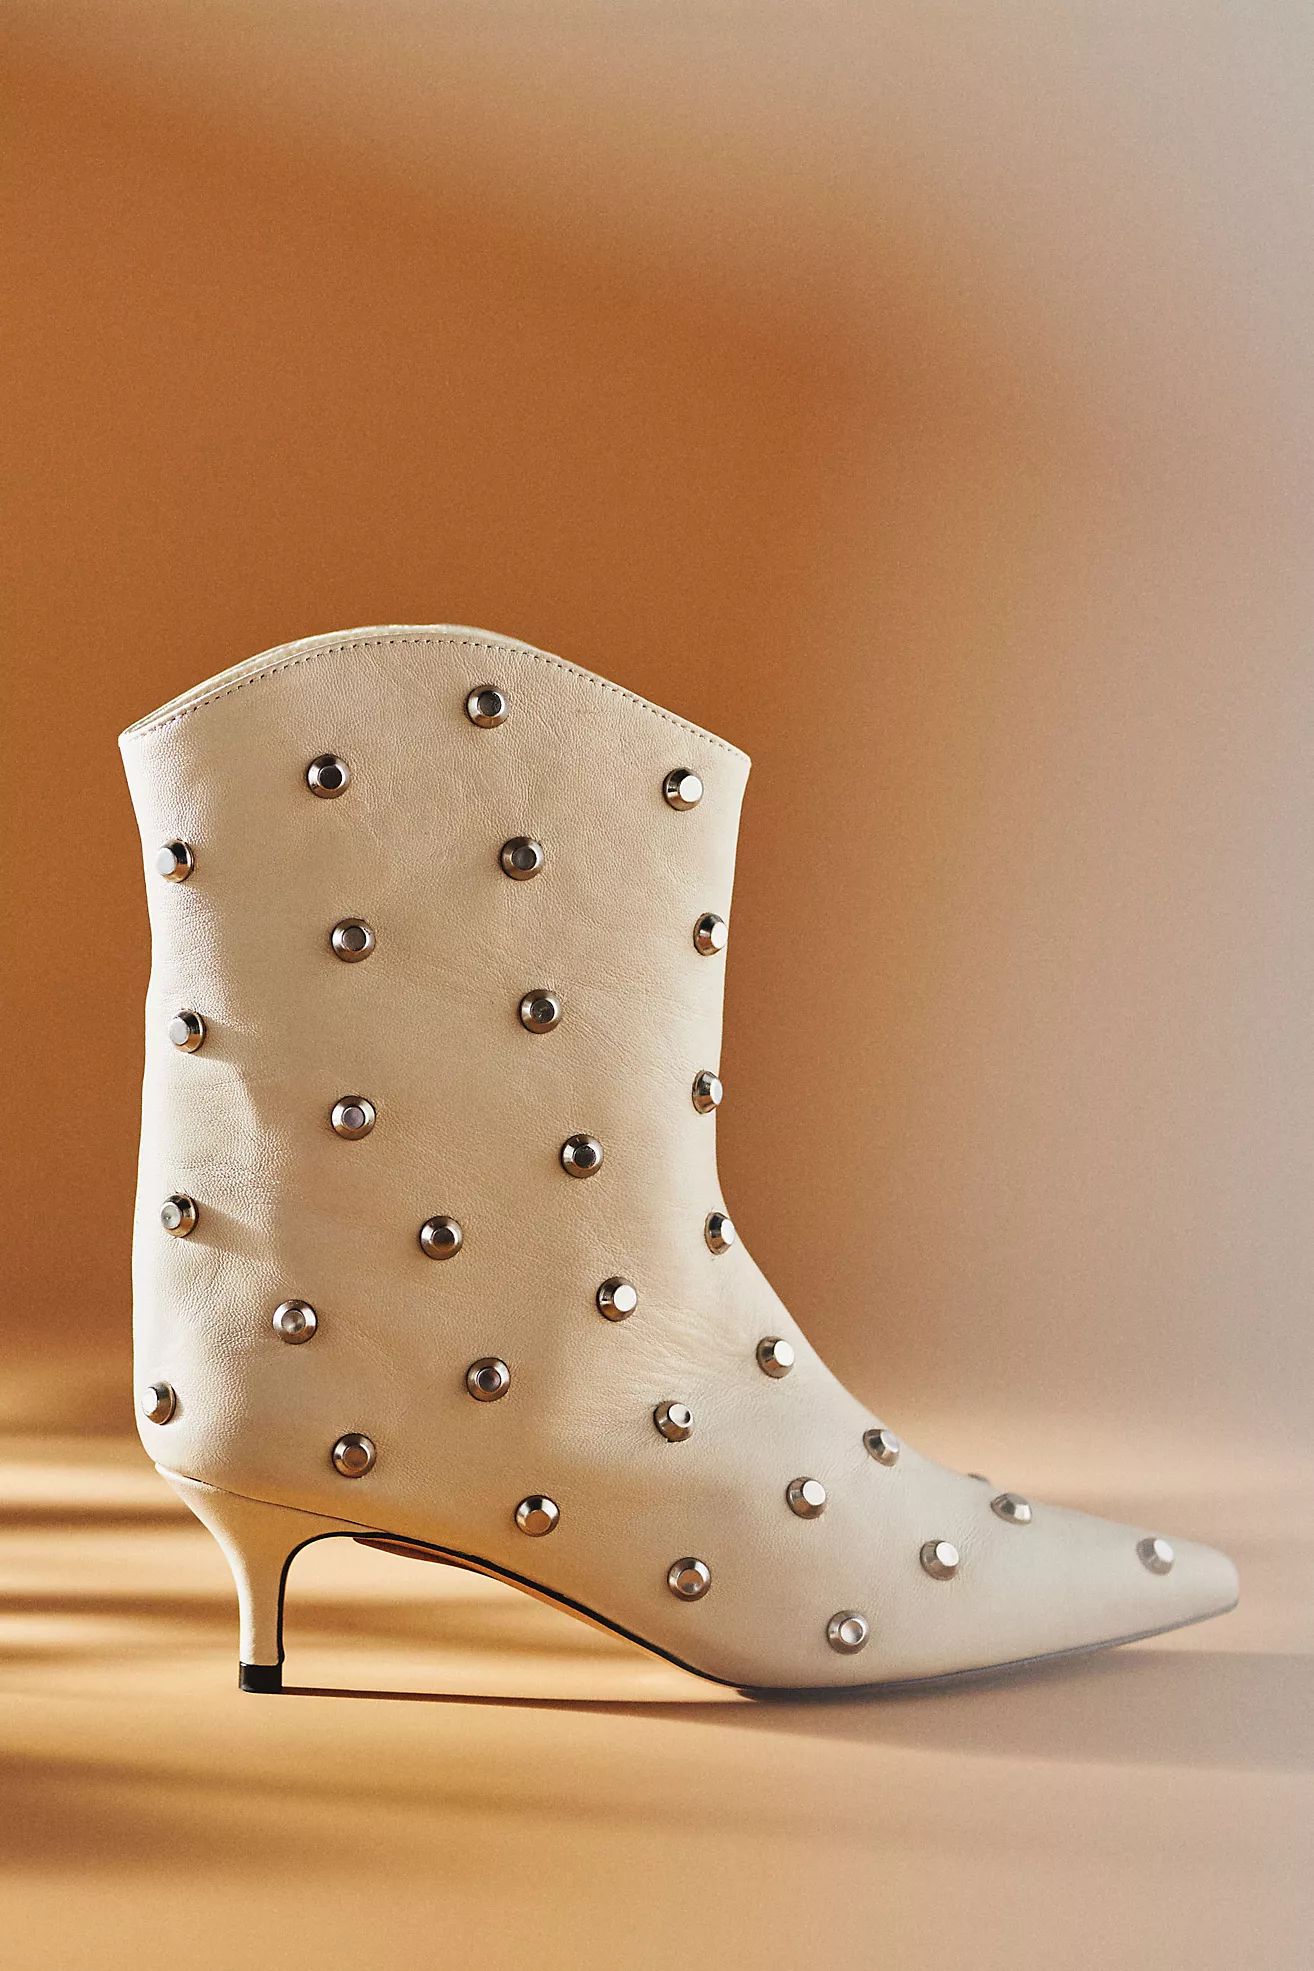 Schutz Maryann Studded Kitten-Heel Boots | Anthropologie (US)